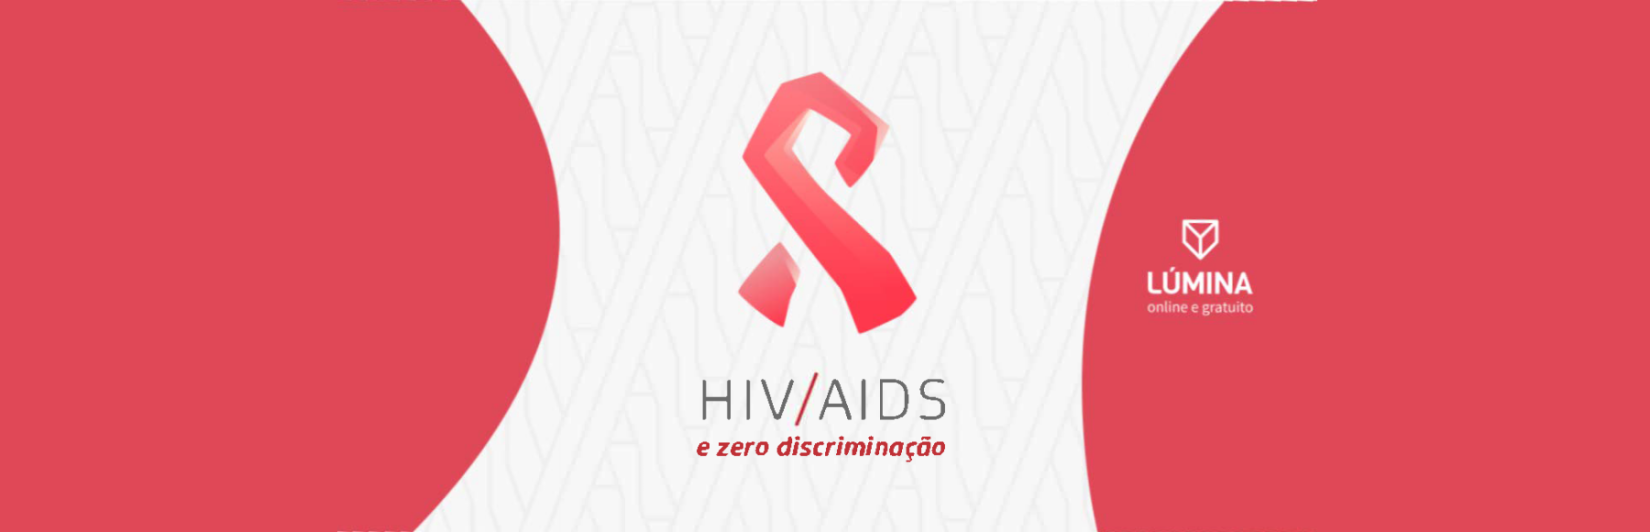 O curso HIV/AIDS e Zero Discriminação tem como objetivo discutir HIV e Aids em uma perspectiva inclusiva, humanizada, interseccional e não discriminatória.